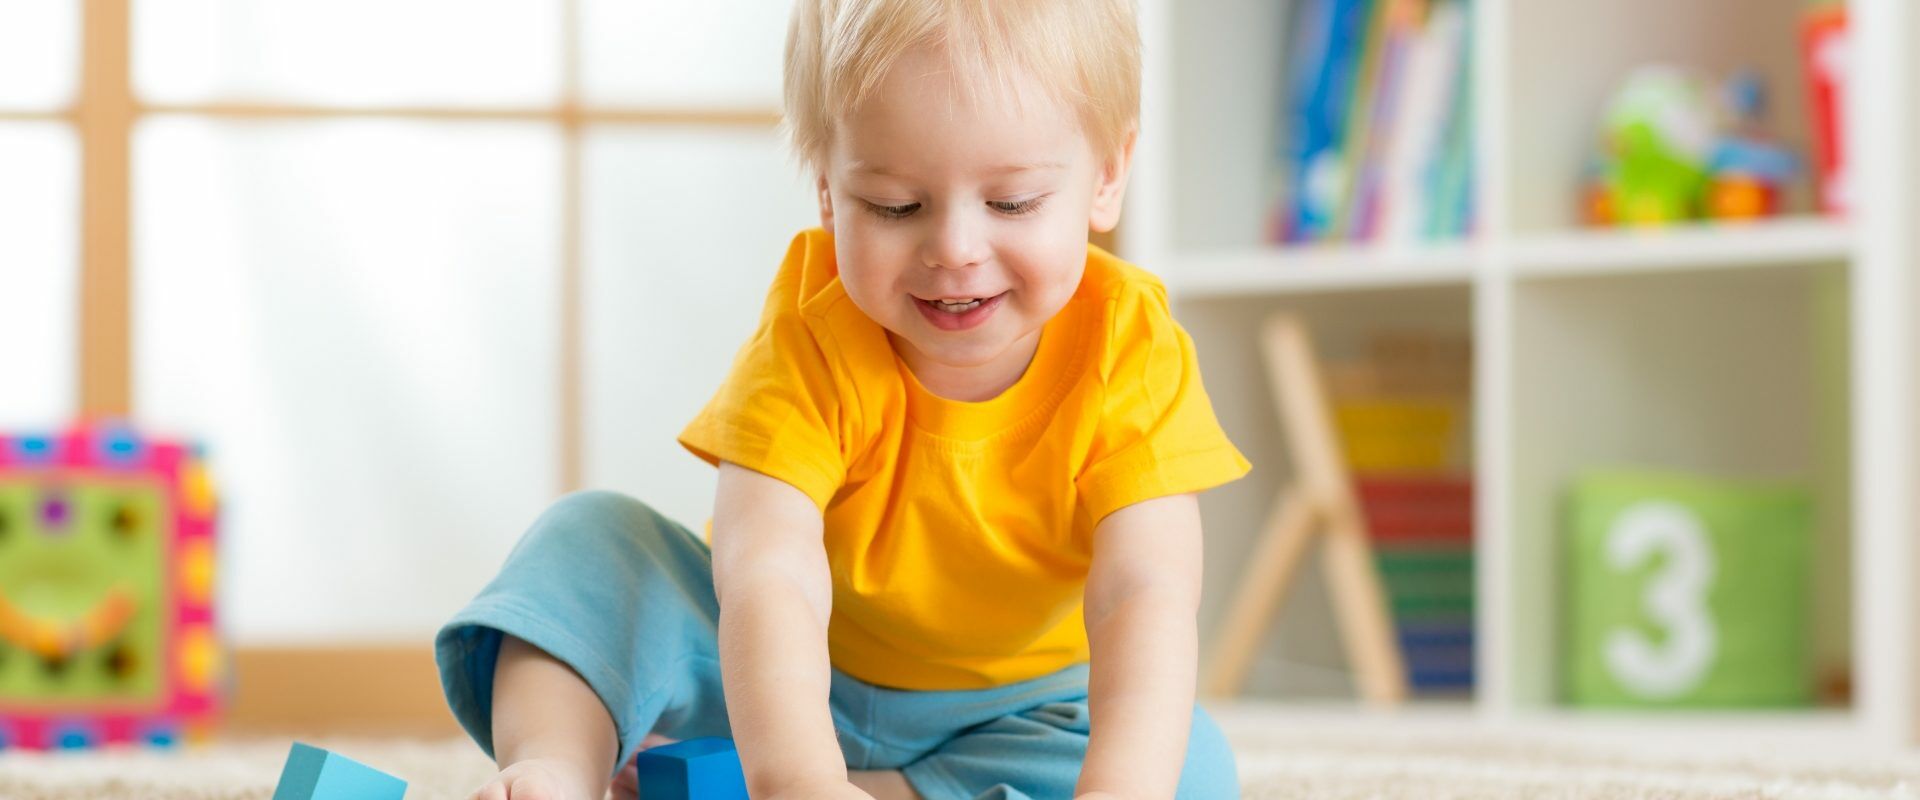 Jak diagnozować i wspierać dzieci z zespołem Aspergera? Wywiad z Joanną Grochowską z Fundacji SYNAPSIS. Mały chłopczyk bawi się klockami w domu.